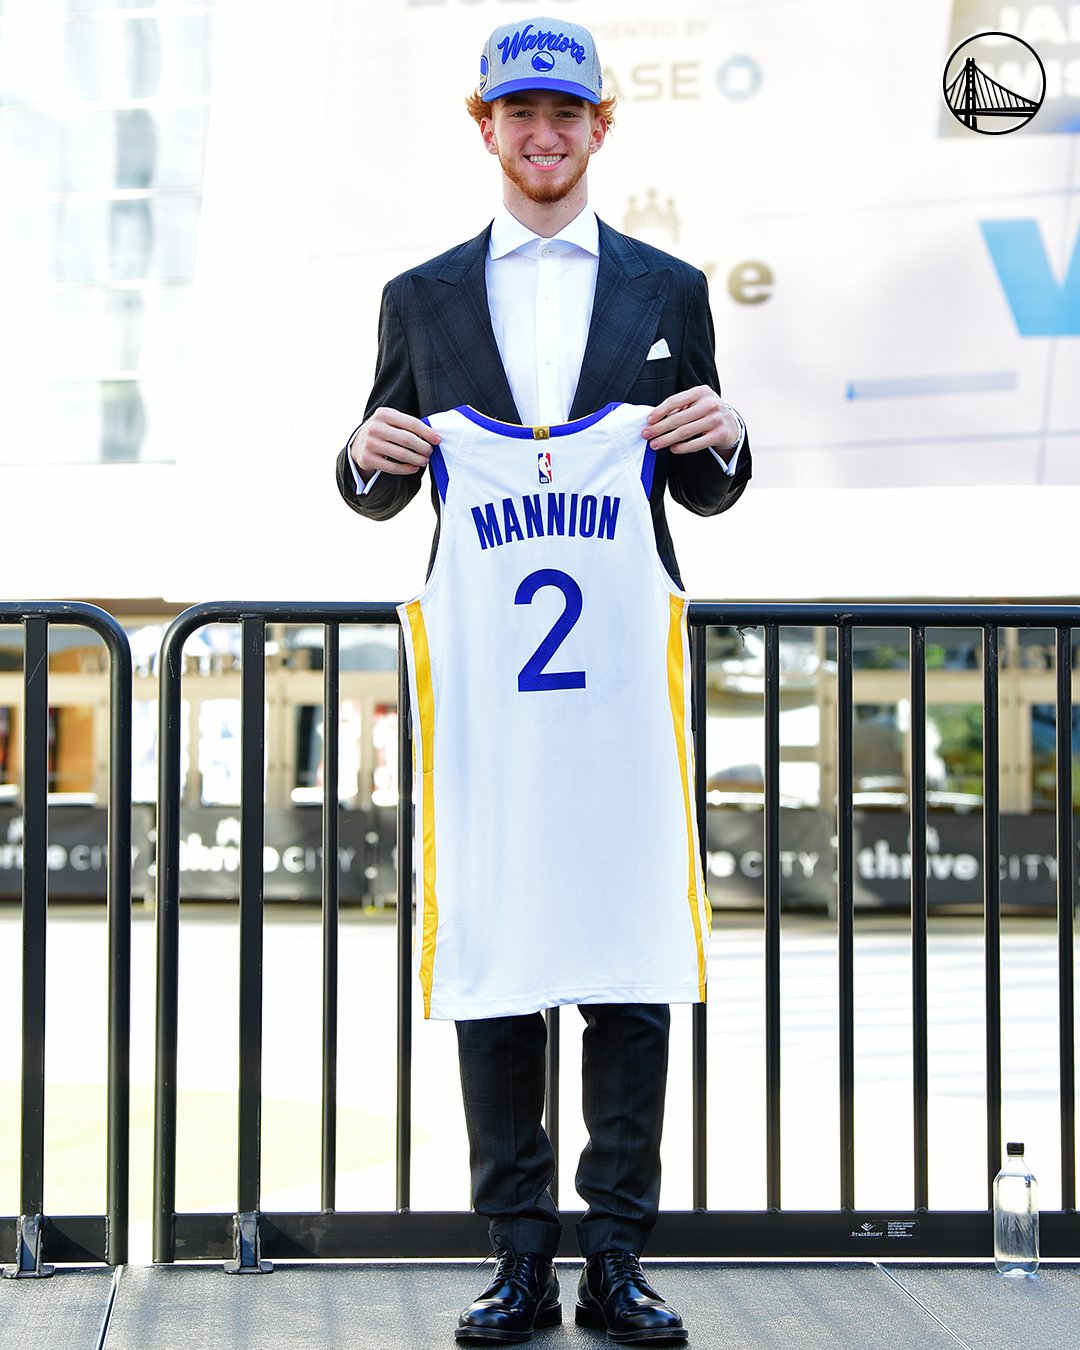 James Wiseman, Nico Mannion receive Golden State Warriors' welcome